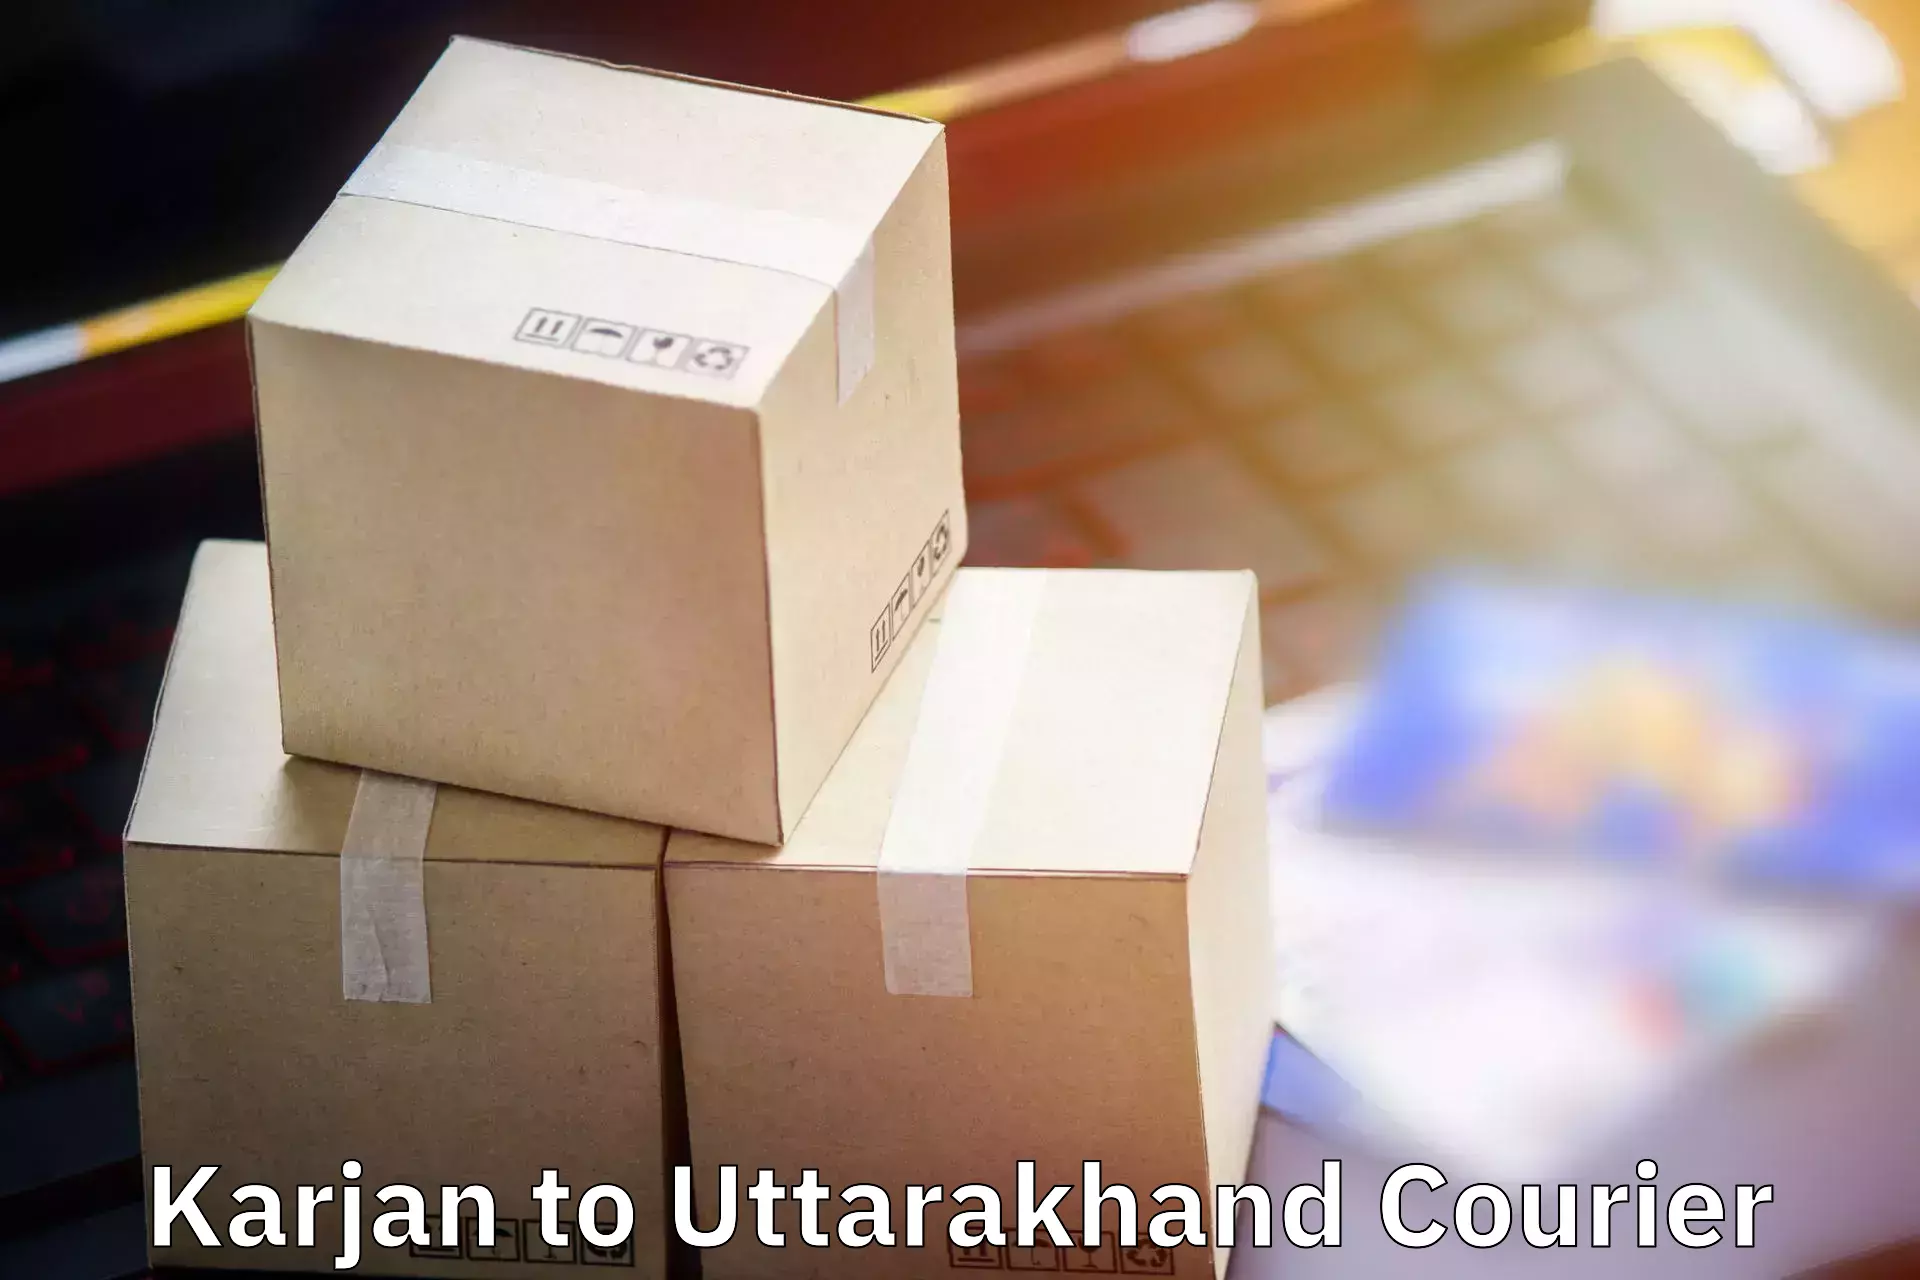 Baggage shipping service Karjan to Gopeshwar